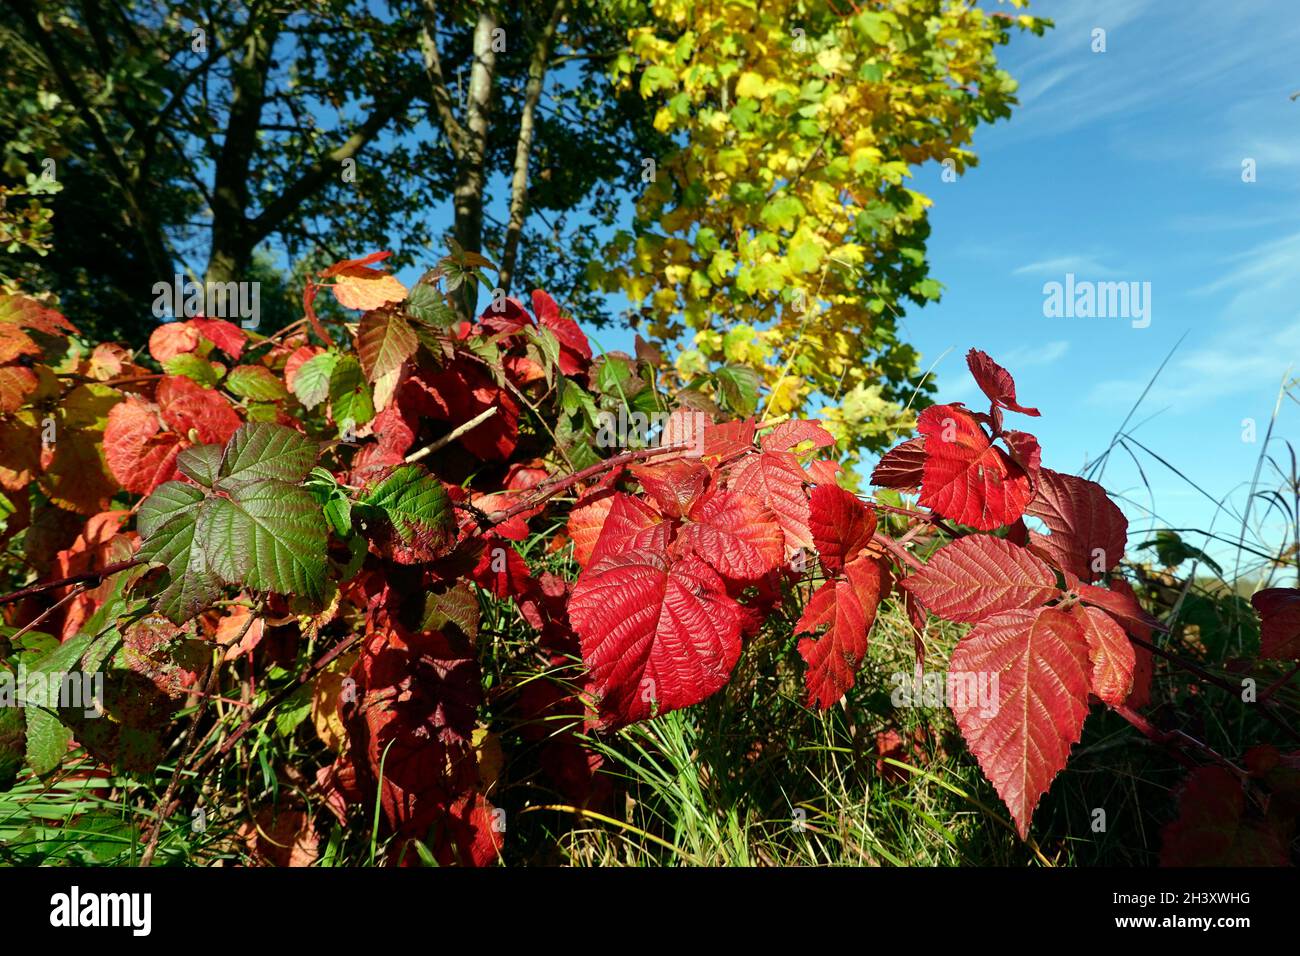 Brombeere (rubus sp.) - Blätter in Herbstfärbung Stock Photo